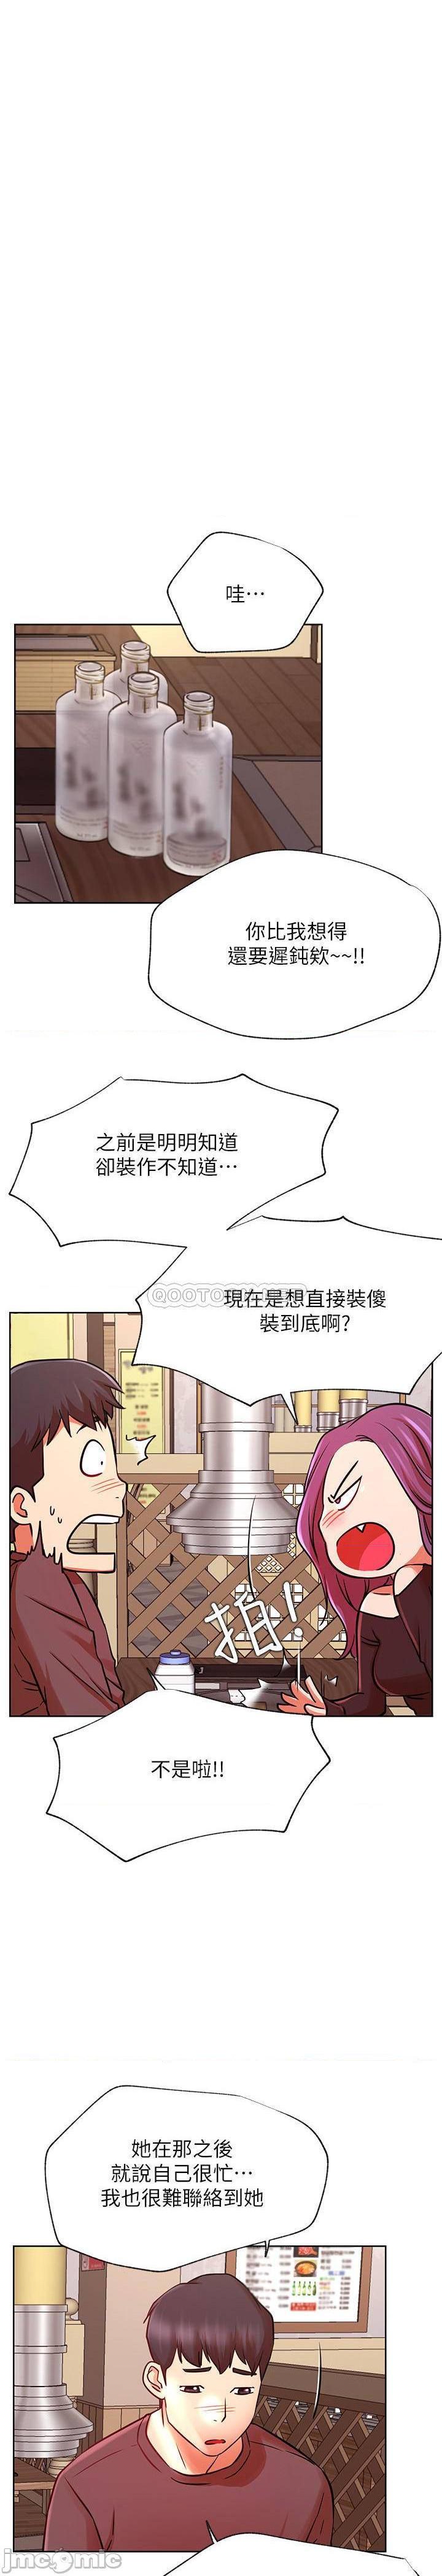 《网红私生活》漫画 第35话 - 耀威哥，今晚可以安慰我吗?